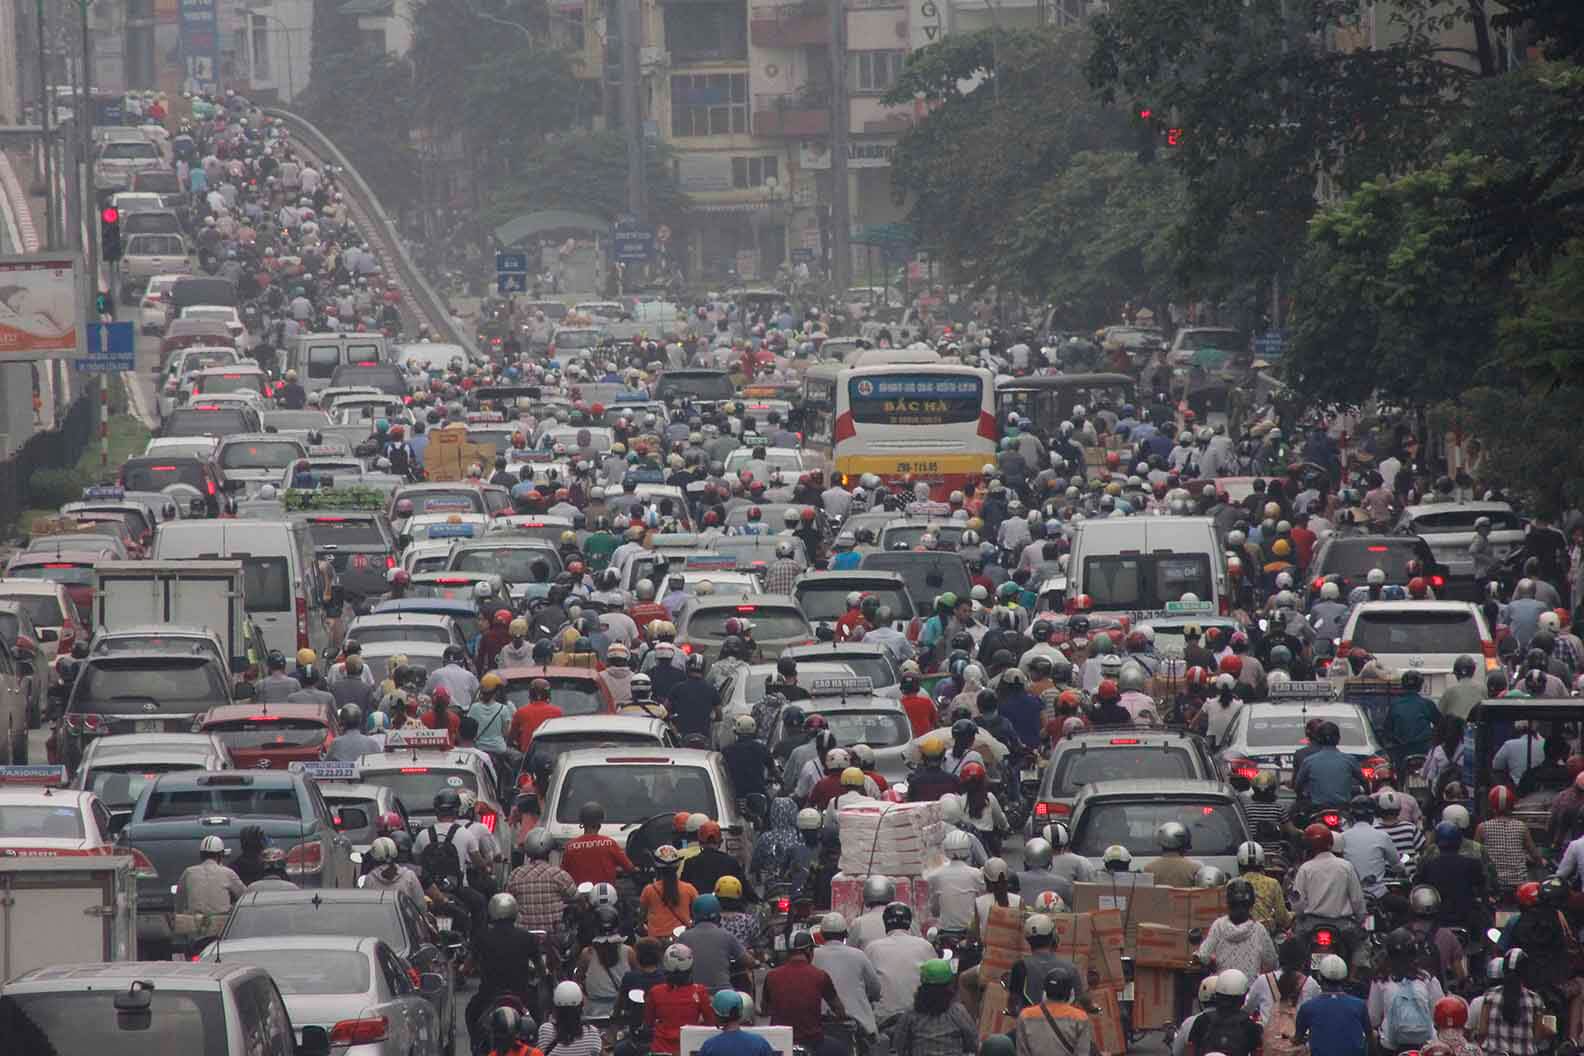 Với khoảng 7 triệu phương tiện cá nhân ở Hà Nội và 9 triệu phương tiện ở Tp.HCM, trong đó có tới 87% là xe máy, nguồn khí thải từ phương tiện giao thông vẫn đang là “thủ phạm chính” gây ô nhiễm môi trường đô thị